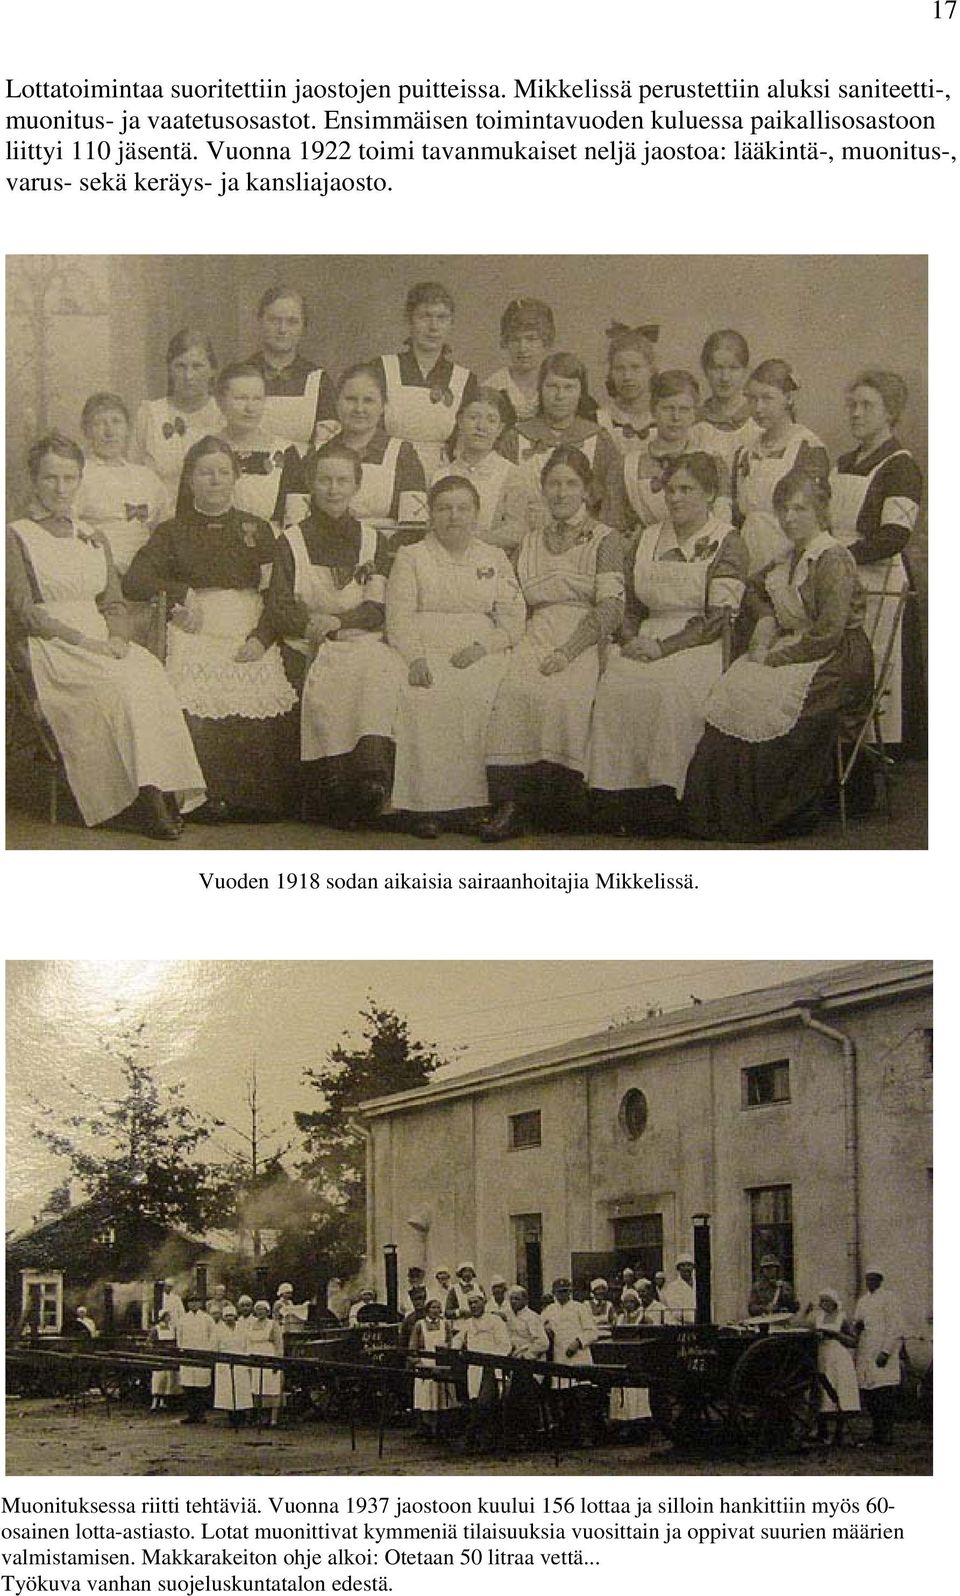 Vuonna 1922 toimi tavanmukaiset neljä jaostoa: lääkintä-, muonitus-, varus- sekä keräys- ja kansliajaosto. Vuoden 1918 sodan aikaisia sairaanhoitajia Mikkelissä.